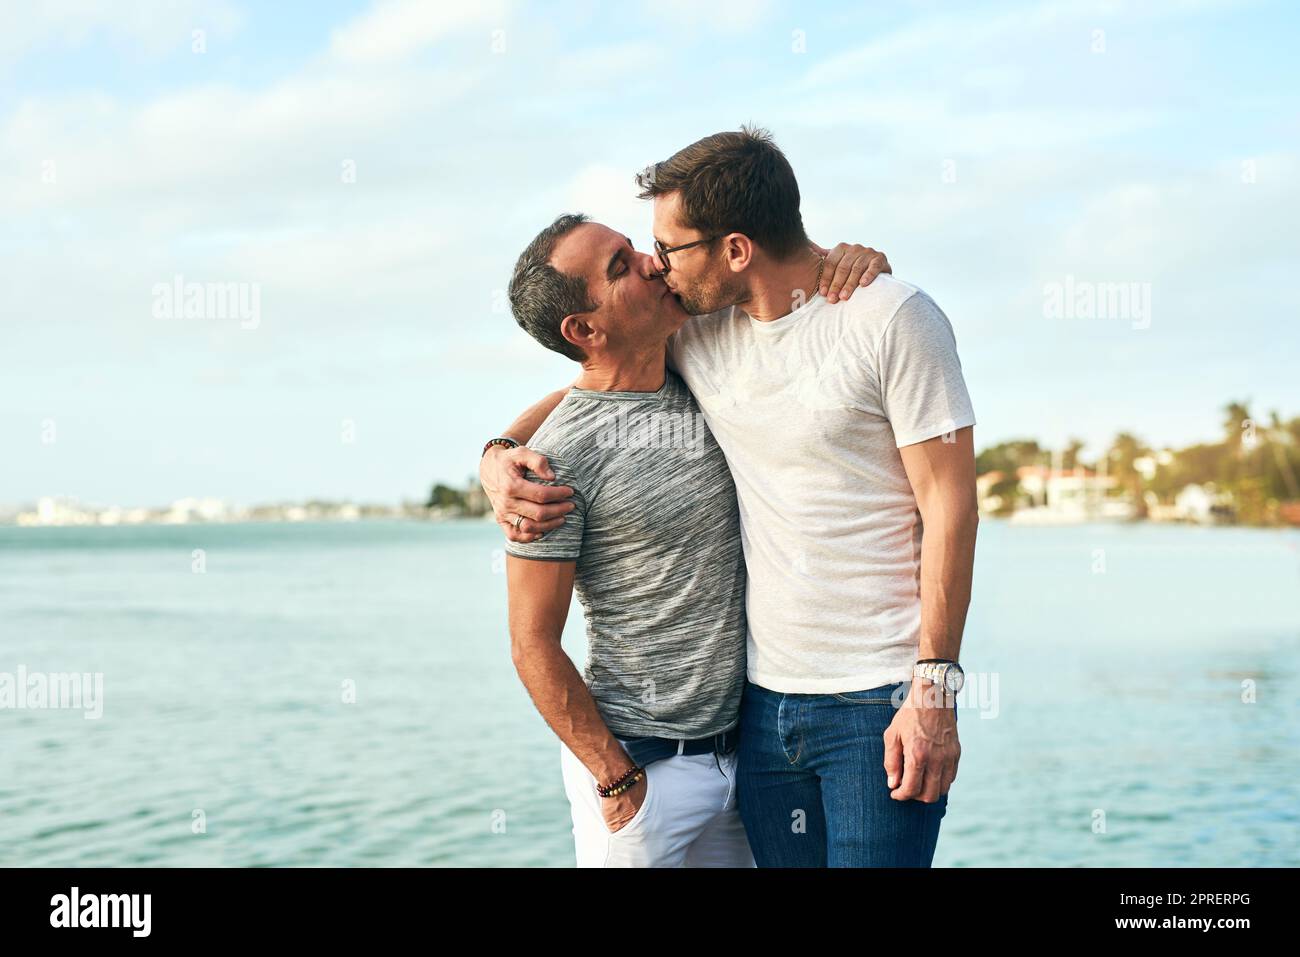 Les baisers sur la plage sont ce qu'ils vivent. Un couple affectueux et mature qui passe la journée au bord de la plage. Banque D'Images